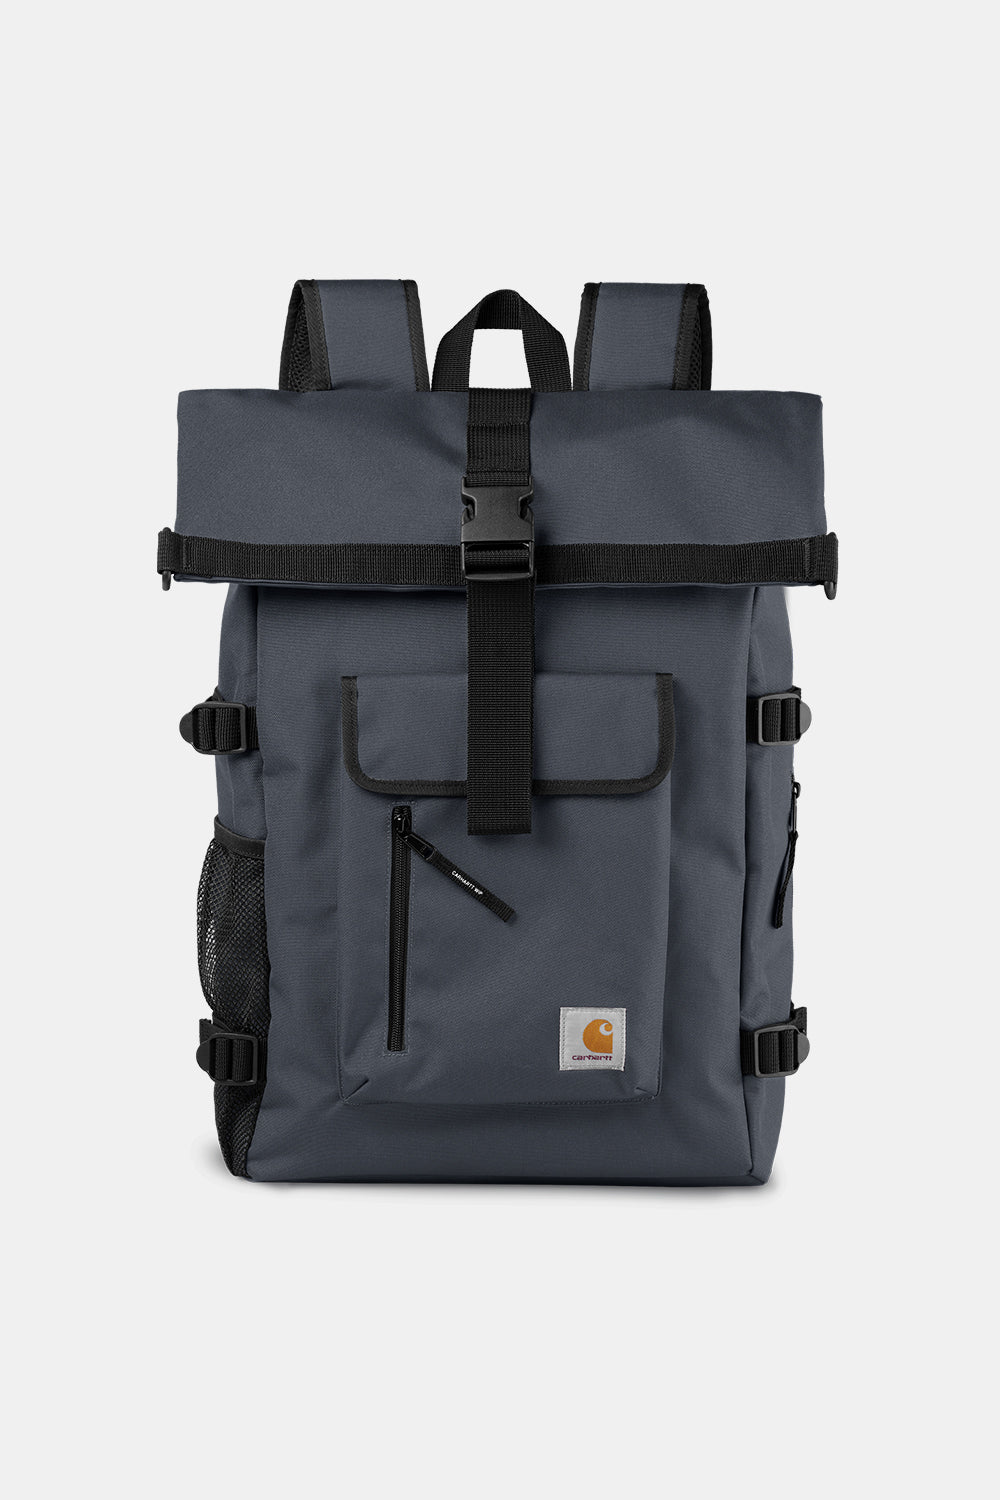 Carhartt WIP Philis Duck Canvas Backpack (Zeus Grey)
